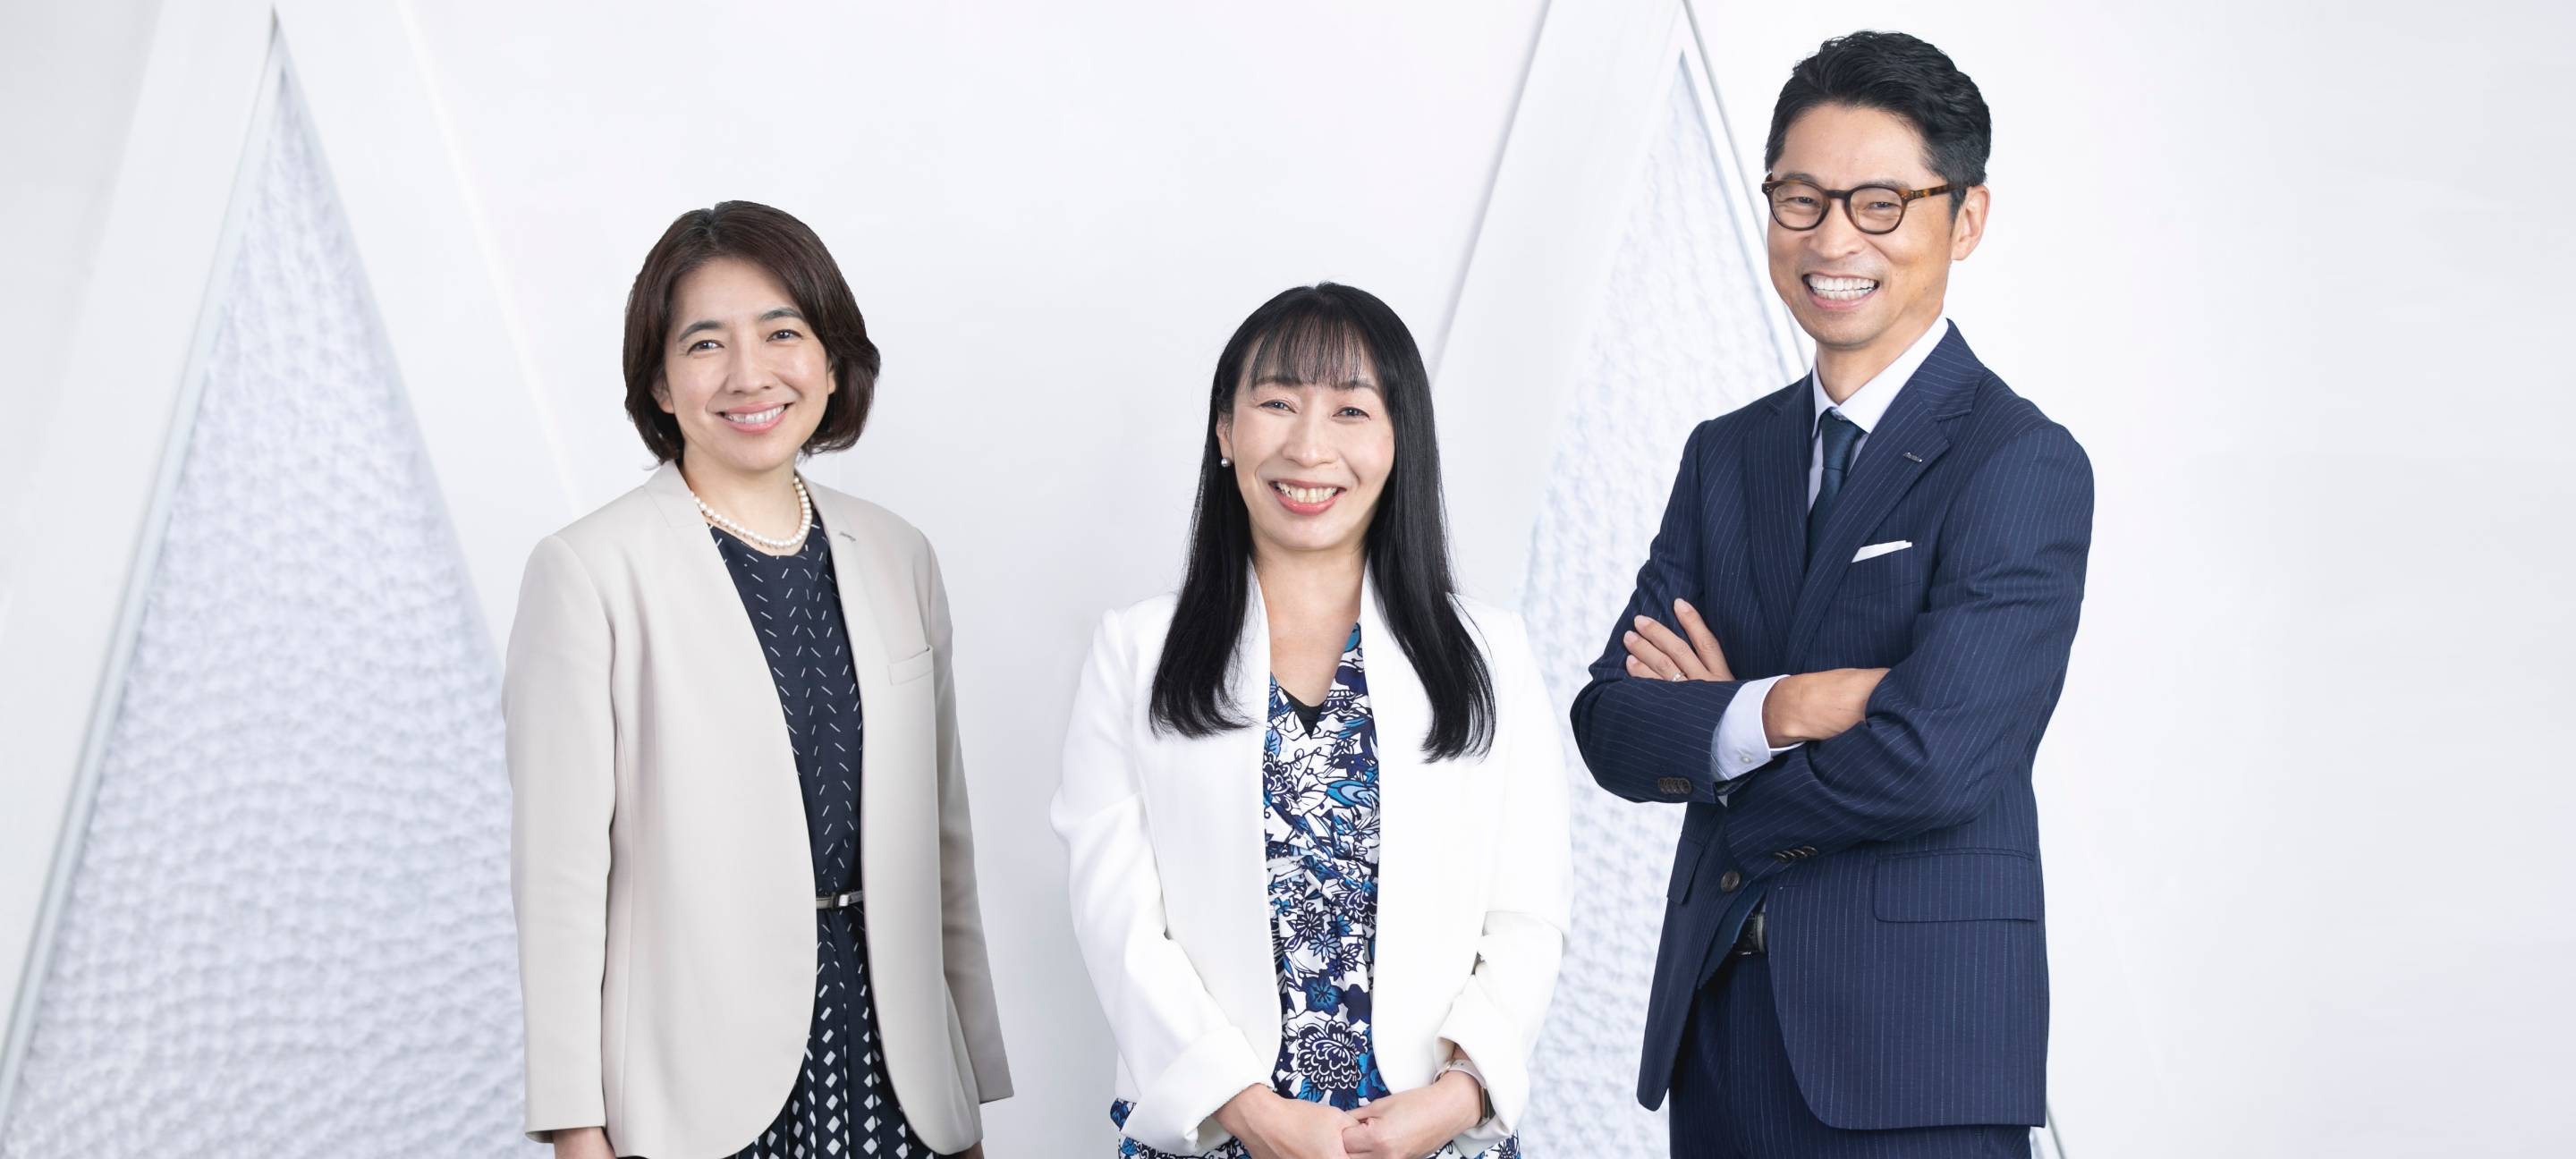 日本の女性研究者の真の課題に向き合う。発足から15年目を迎える「資生堂 女性研究者サイエンスグラント」の未来